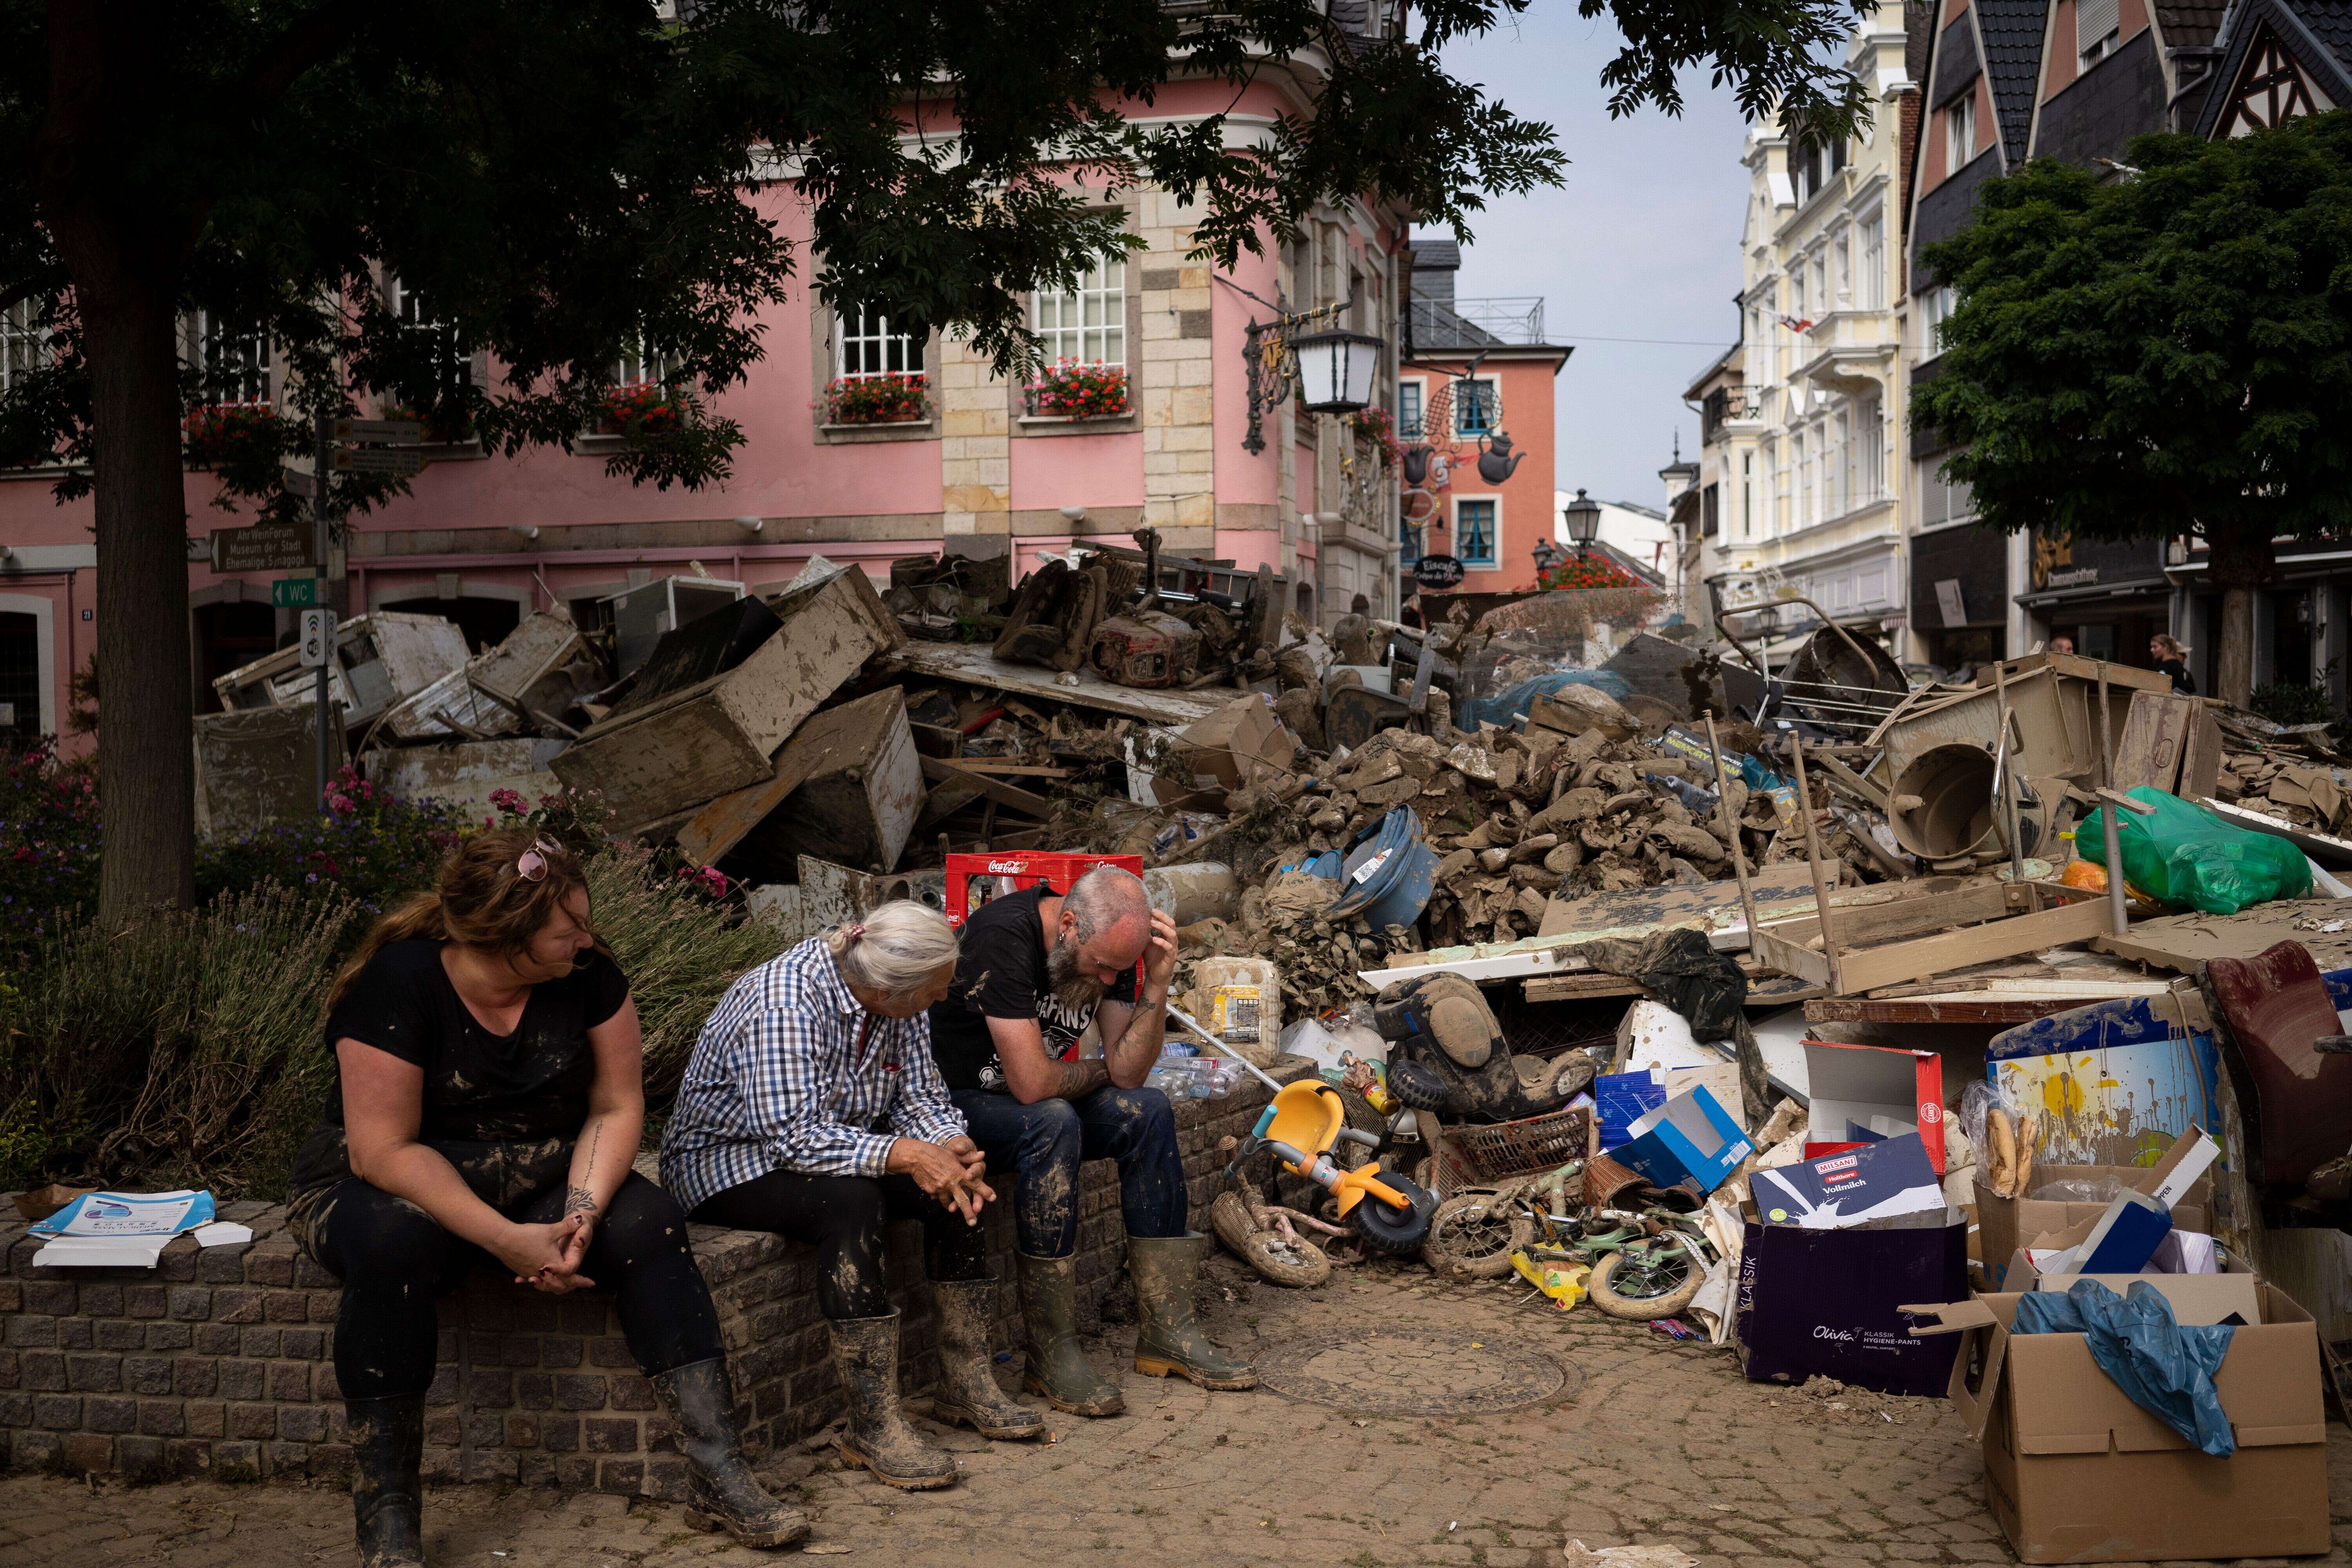 Photo prise le 19 juillet dans la région de Rhénanie-Palatinat, où les habitants tentent de nettoyer les dégâts des inondations mortelles. (AP Photo/Bram Janssen)